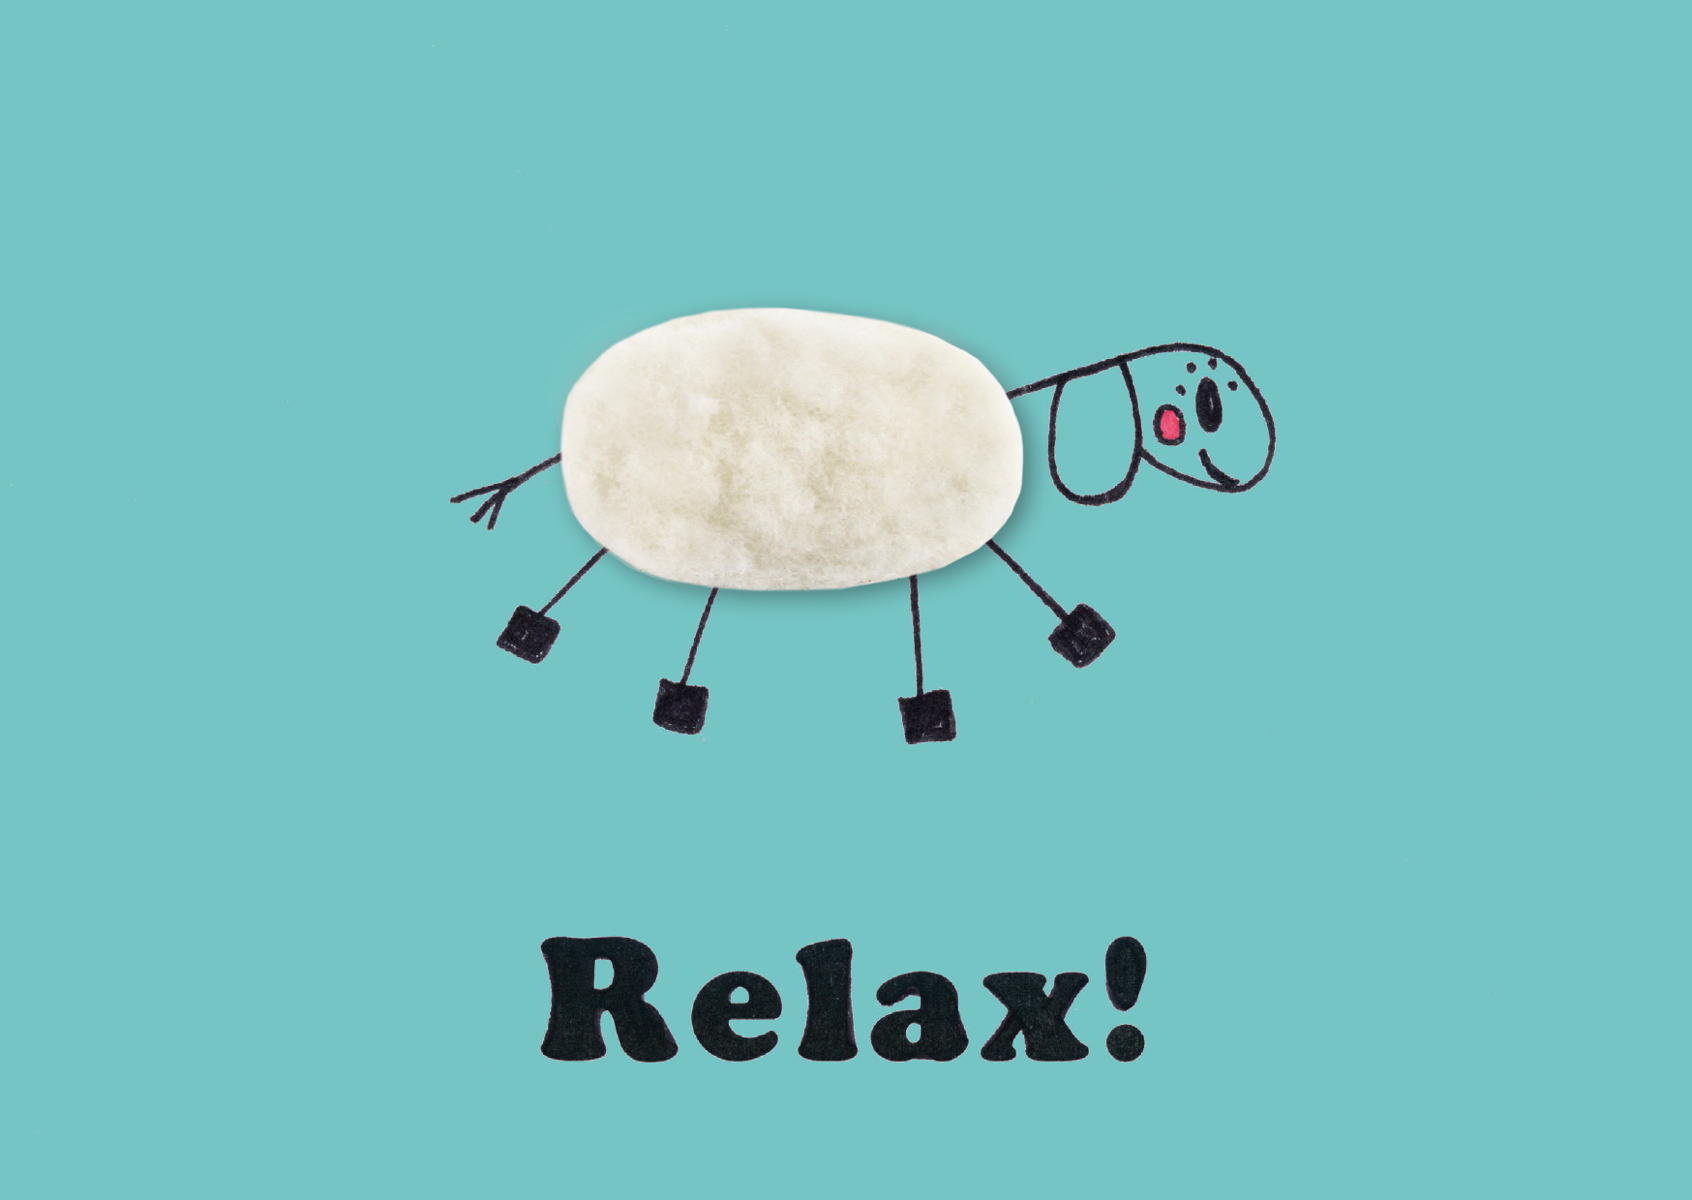 Plüschkarte "Relax"